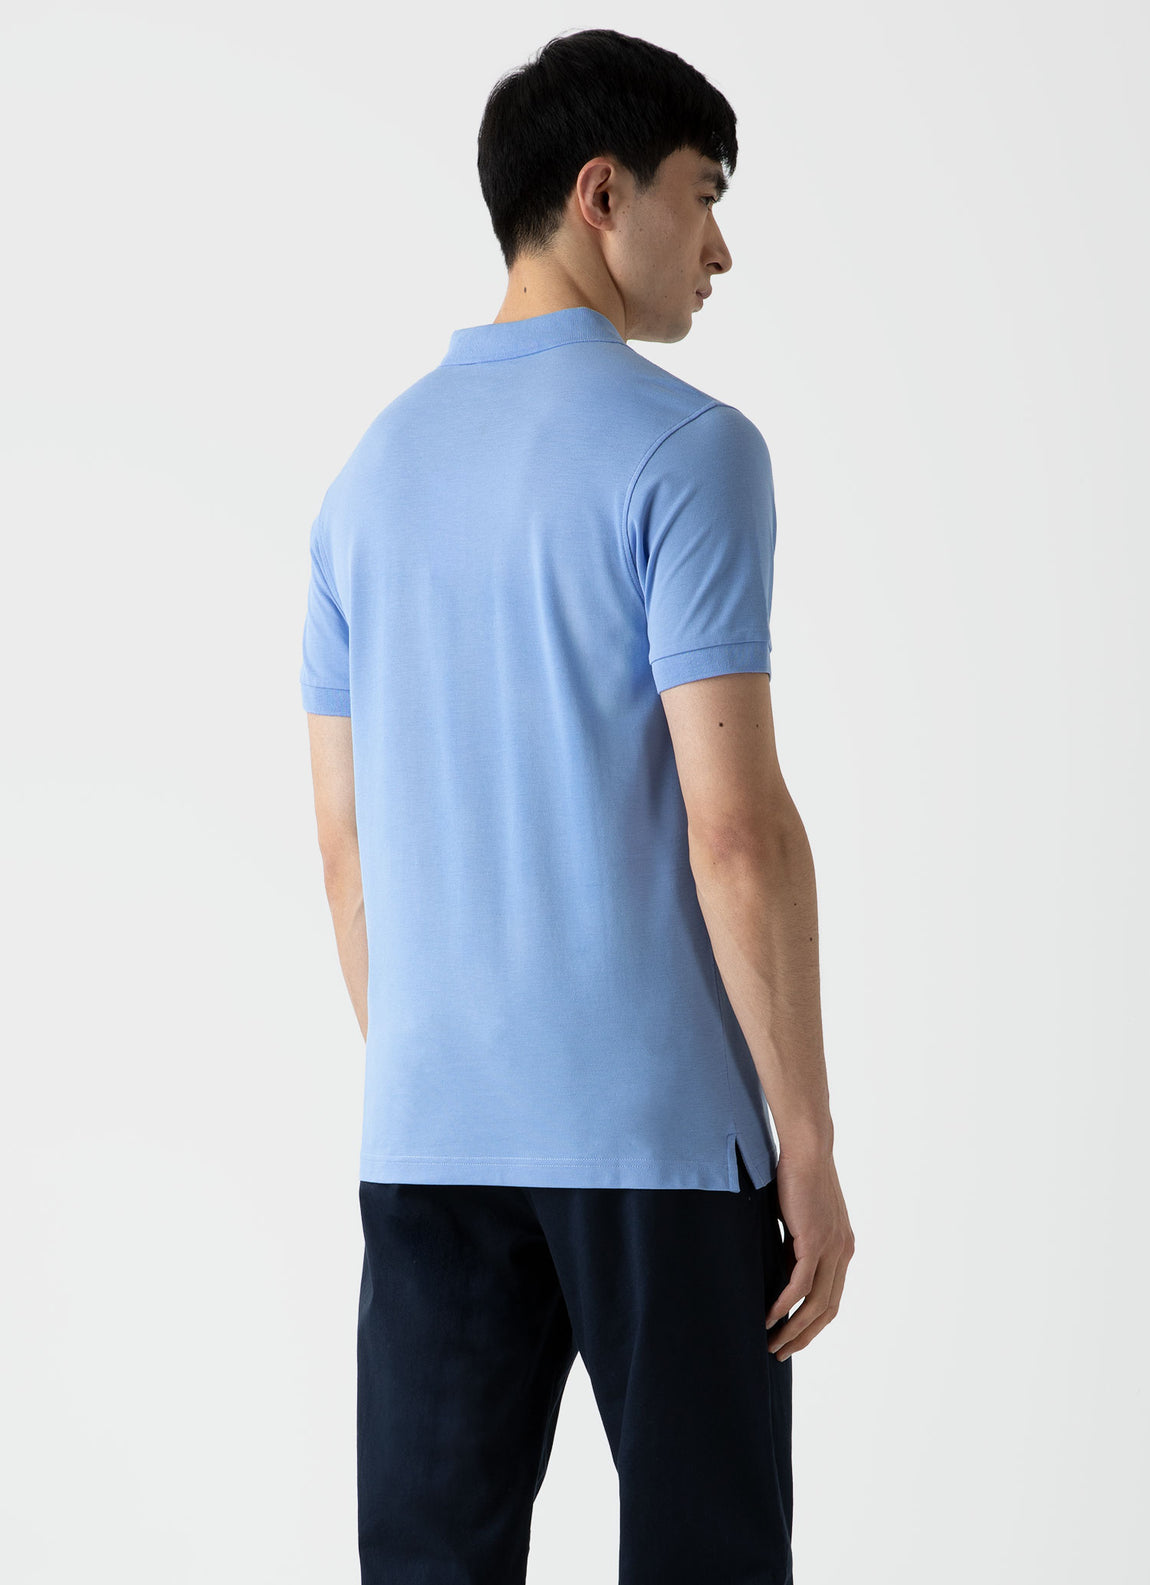 Men's Piqué Polo Shirt in Cool Blue